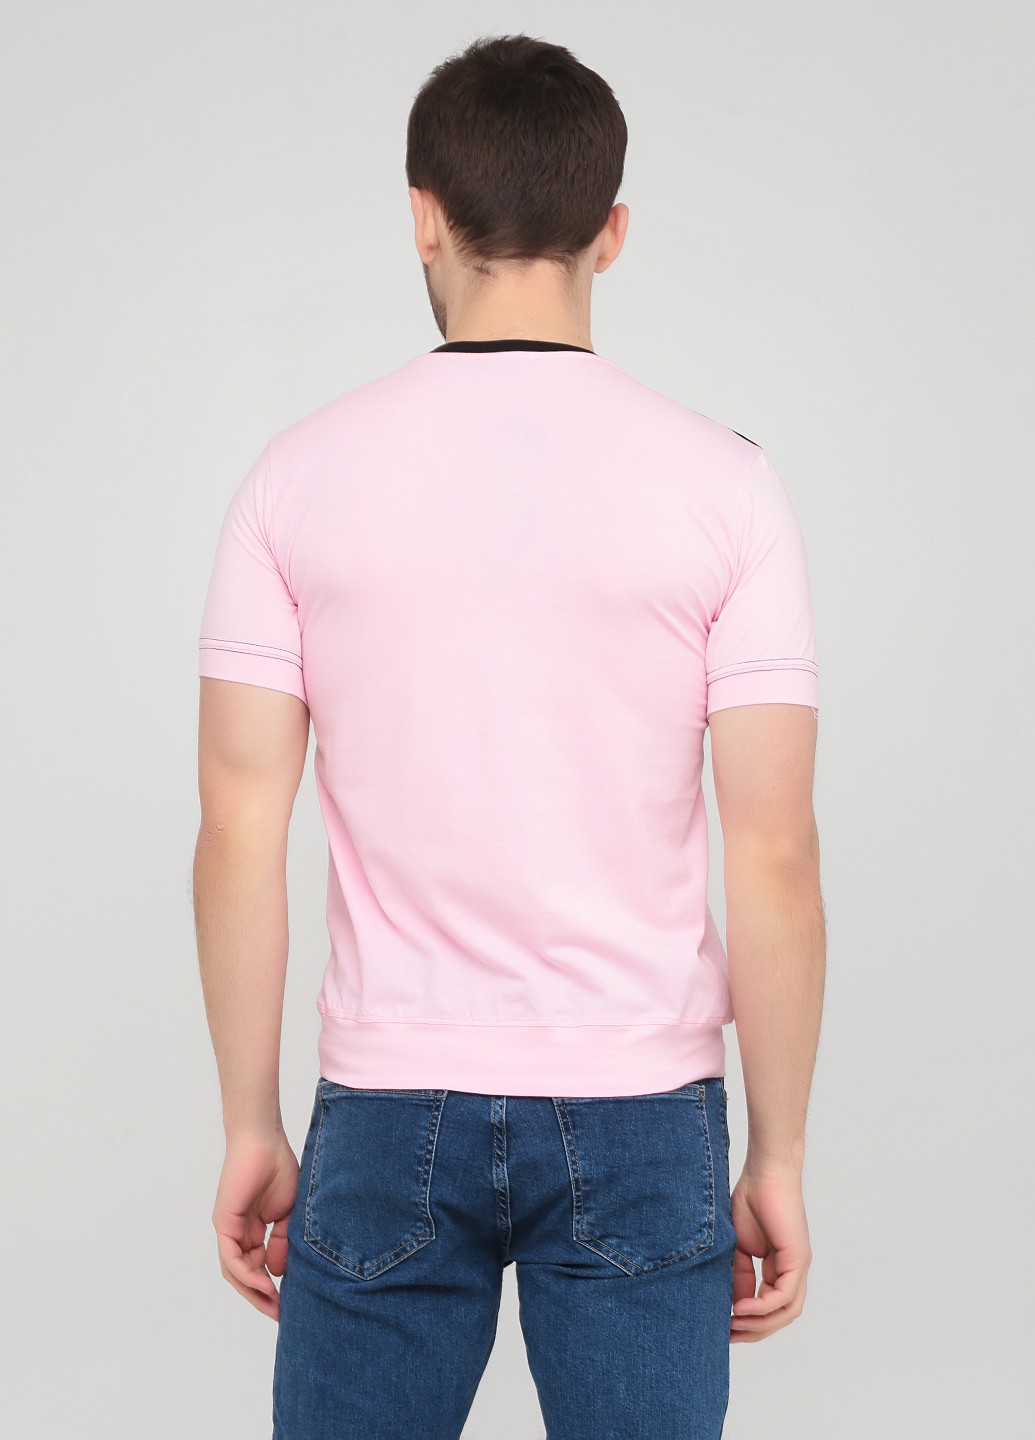 Світло-рожева футболка з коротким рукавом Baydo